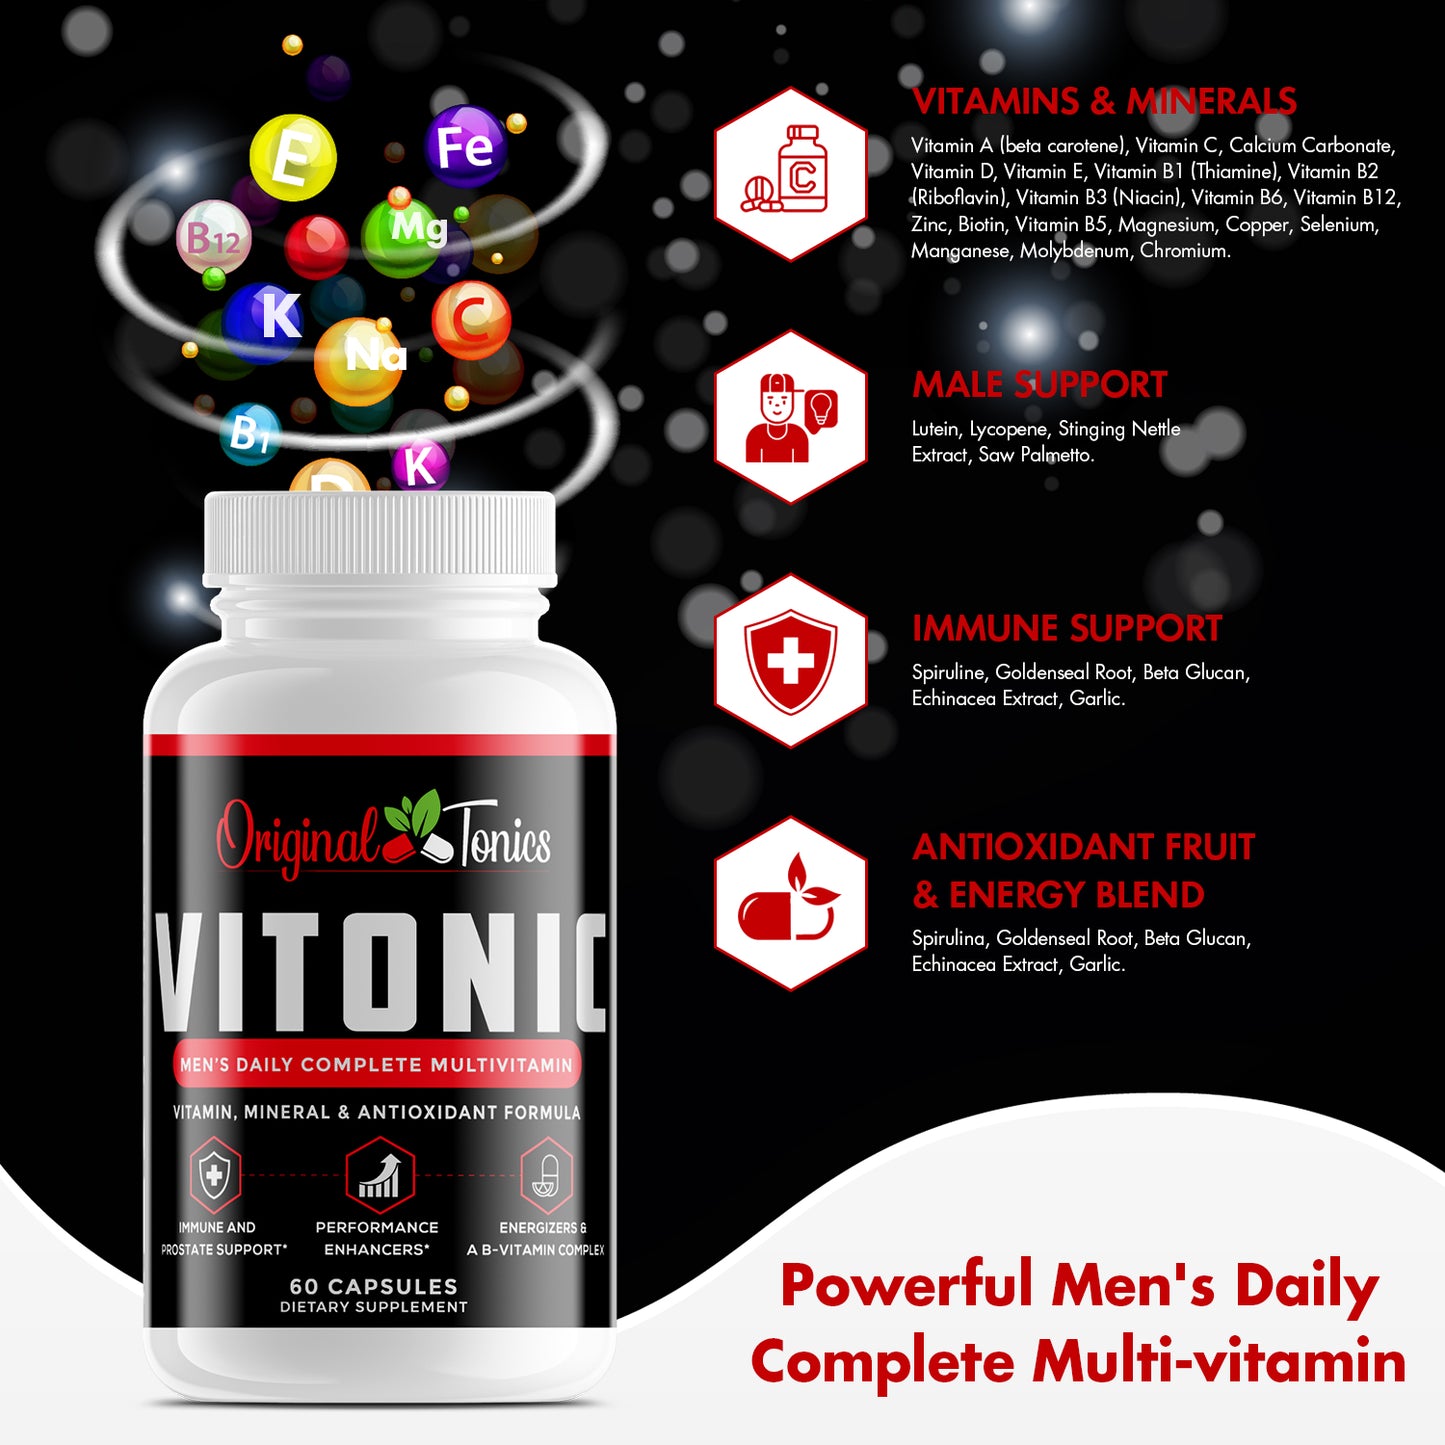 VITONIC-Men's Daily Complete Multivitamin